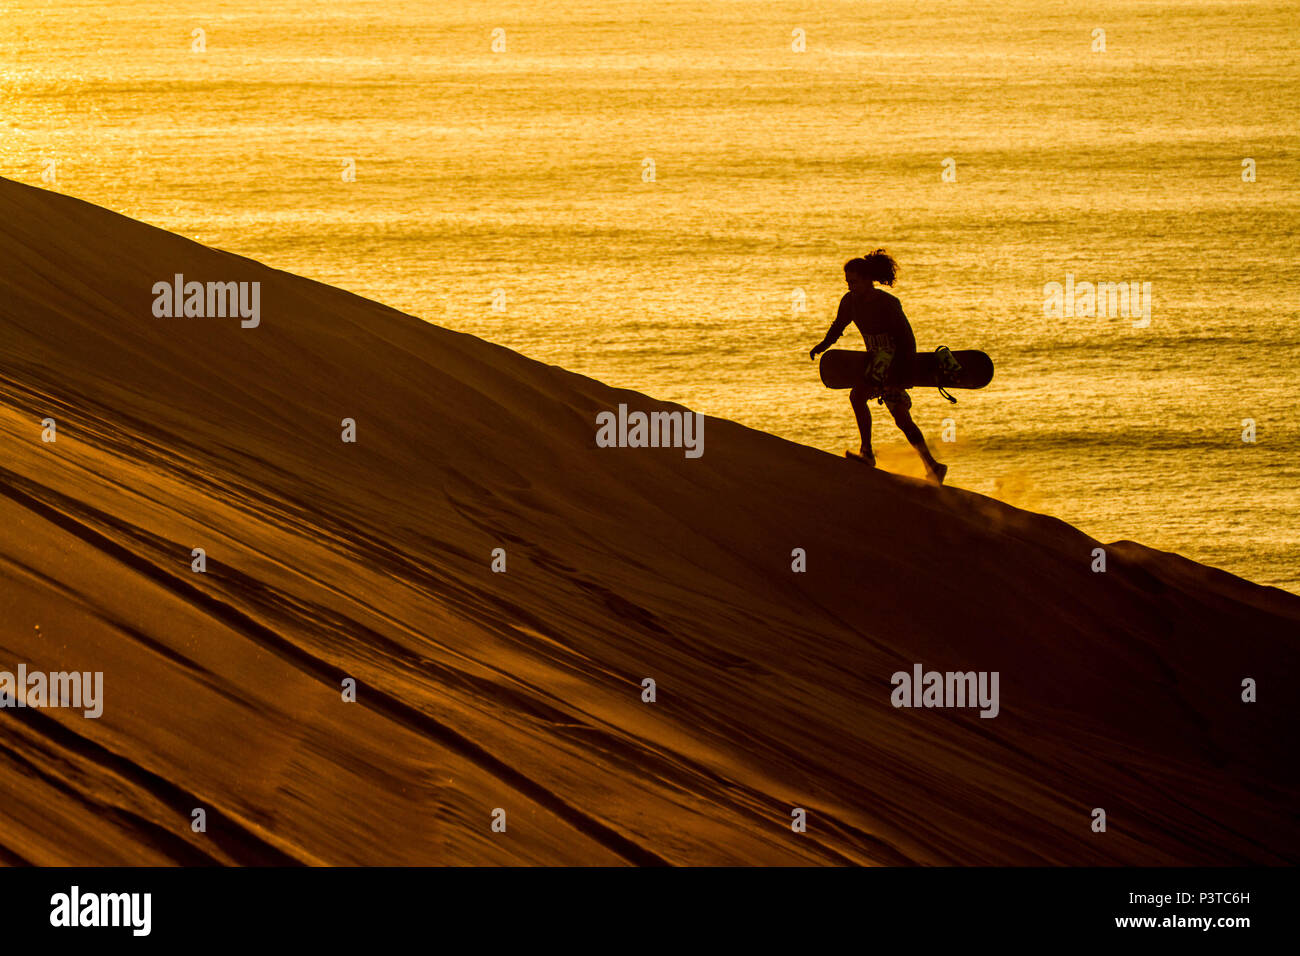 IQUIQUE, CHILE - 15.11.2015: DESERTO DO ATACAMA - Silhueta de sandboarder caminhando ao por do sol em Cerro Dragón, uma duna situada junto à cidade de Iquique, no Deserto do Atacama. (Foto: Ricardo Ribas / Fotoarena) Stock Photo